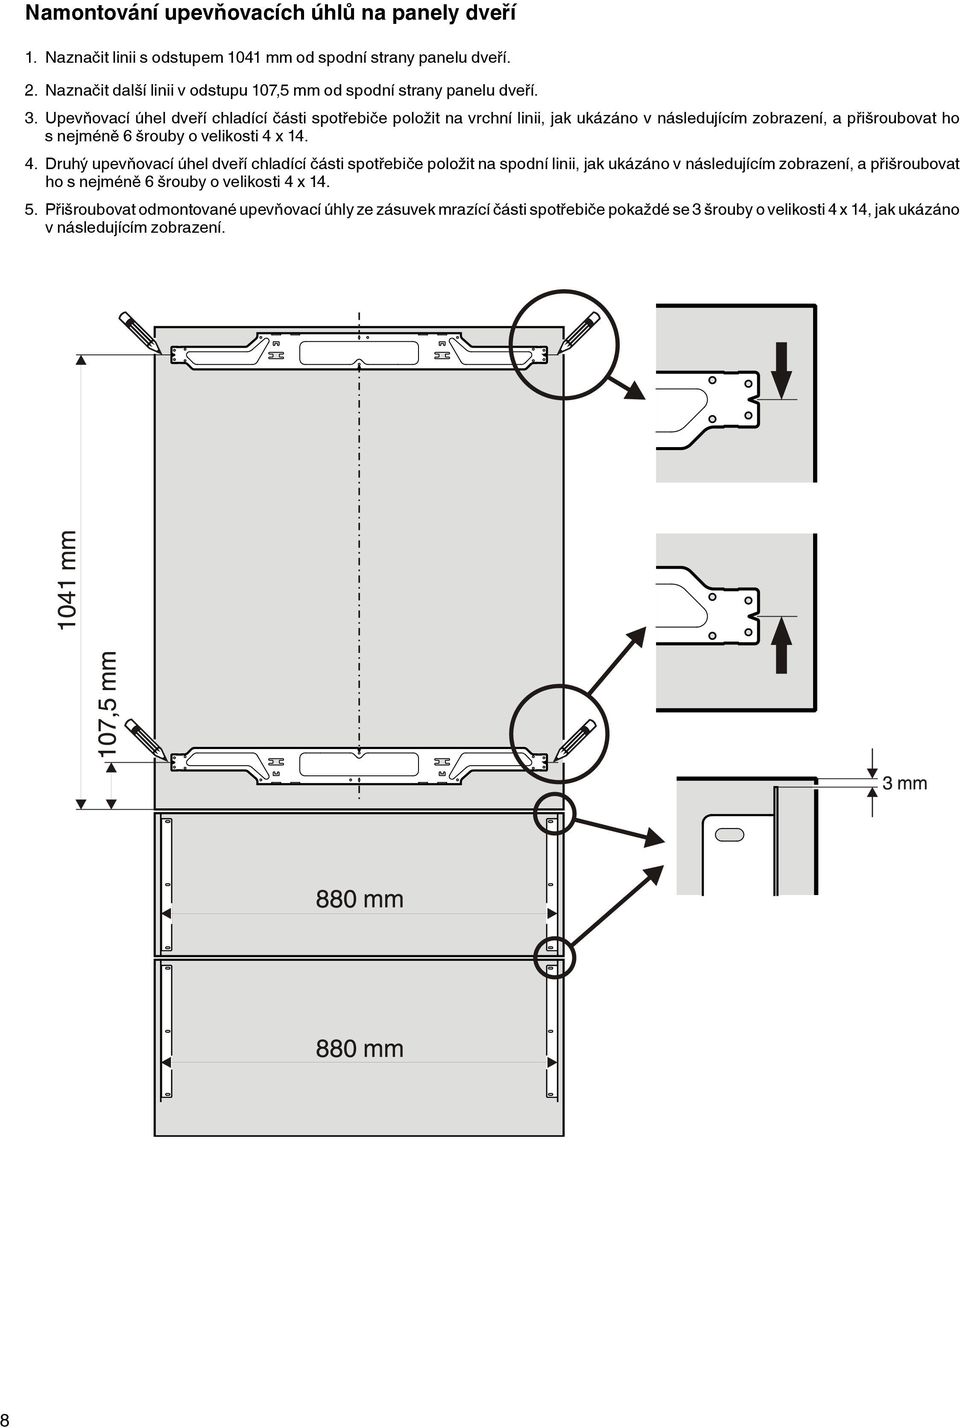 Upevňovací úhel dveří chladící části spotřebiče položit na vrchní linii, jak ukázáno v následujícím zobrazení, a přišroubovat ho s nejméně 6 šrouby o velikosti 4 